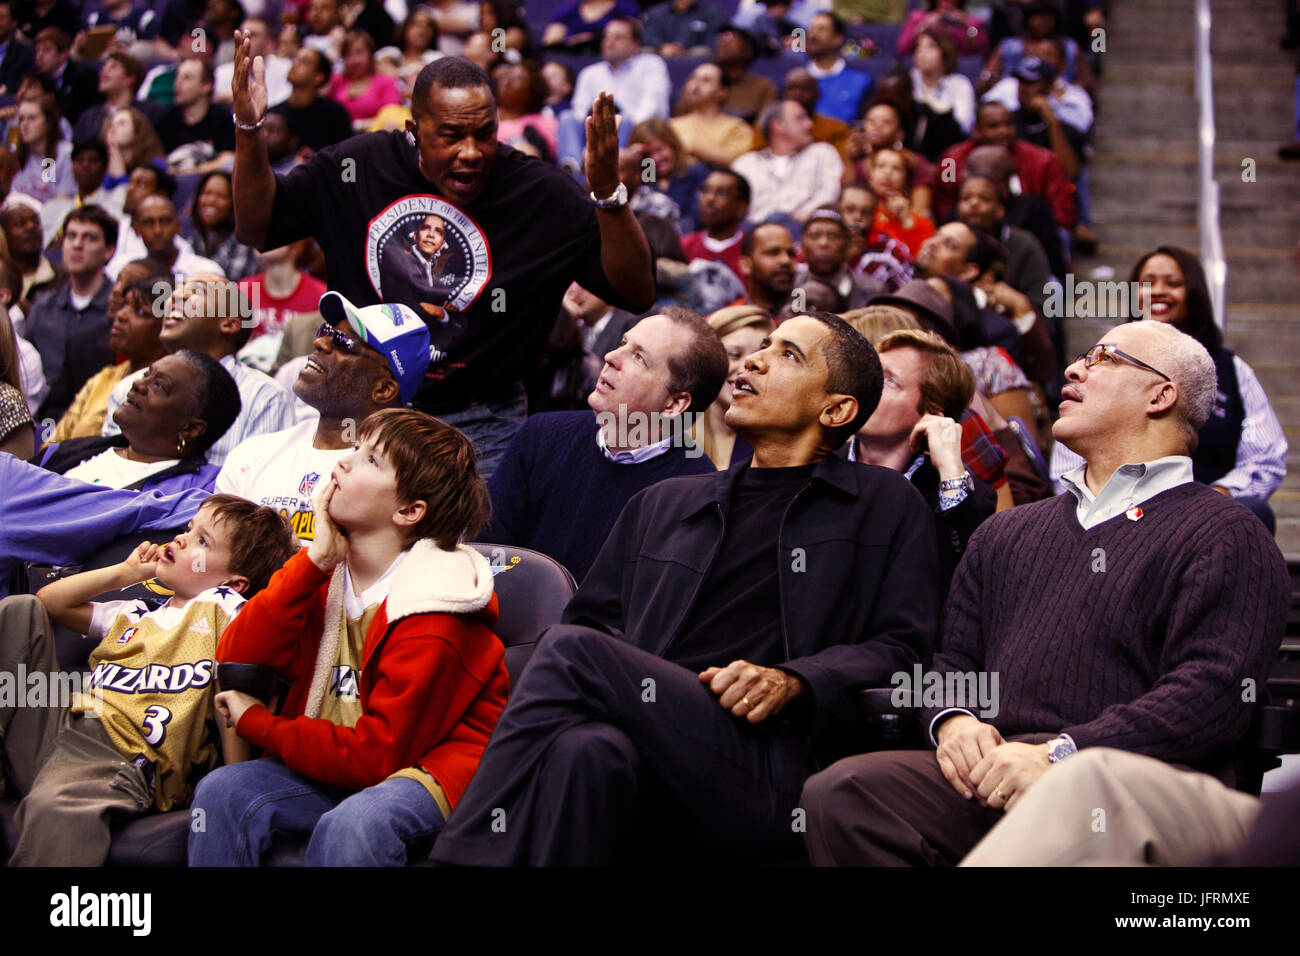 Le président Barack Obama participe à une Washington Wizards vs Chicago Bulls match de basket-ball au Verizon Center, Washington, D.C. 27/02/09. Photo Officiel de la Maison Blanche par Pete Souza Banque D'Images